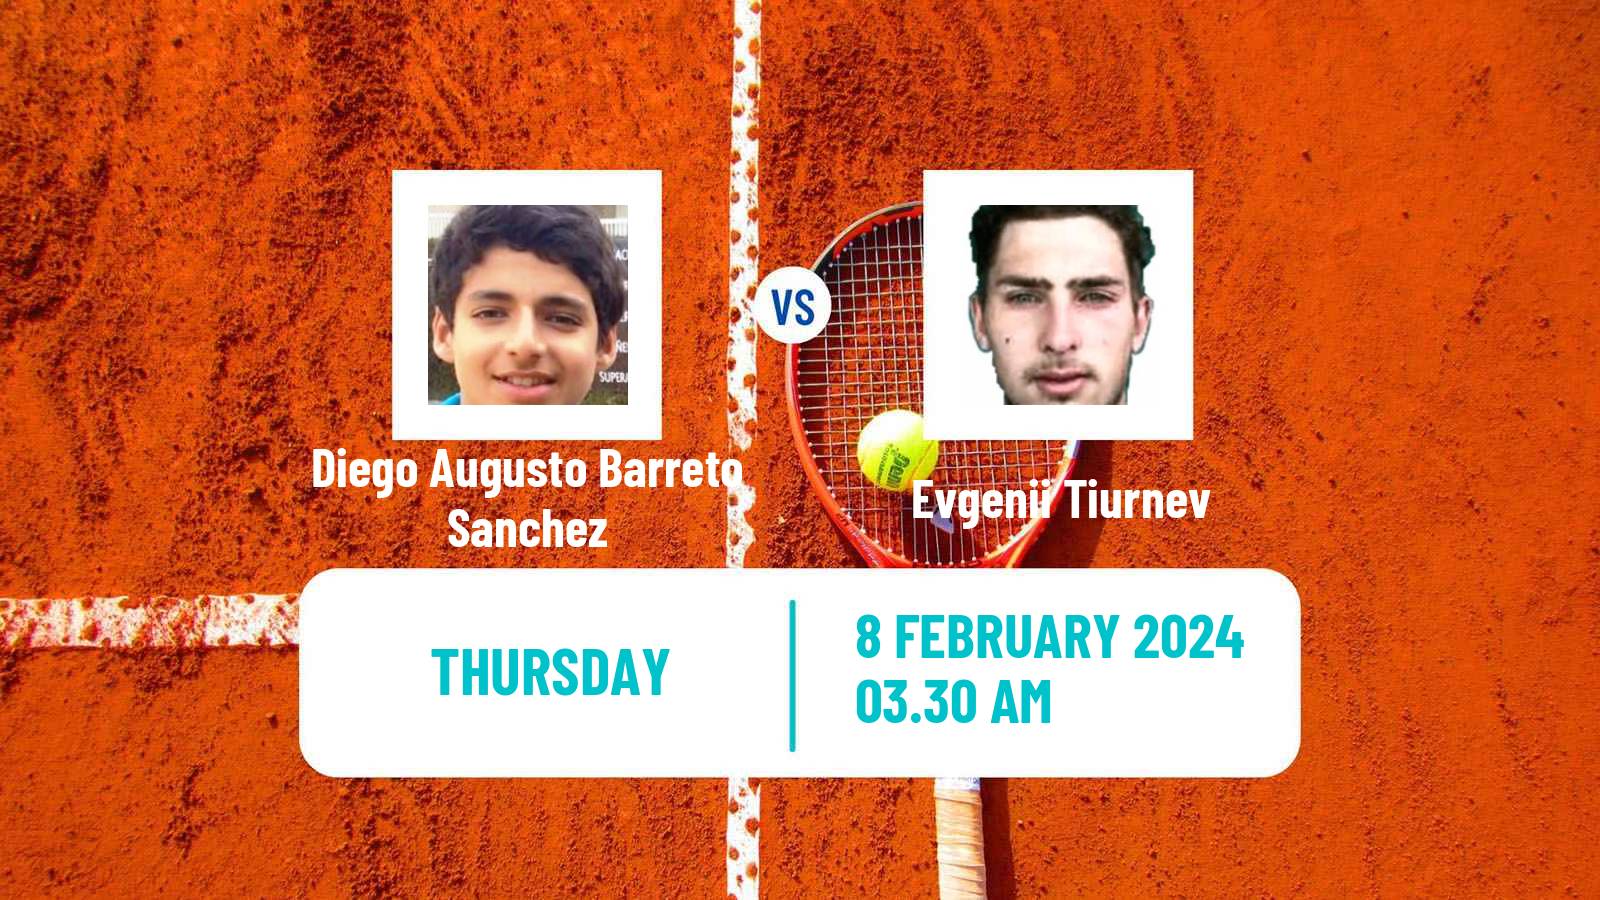 Tennis ITF M15 Monastir 6 Men Diego Augusto Barreto Sanchez - Evgenii Tiurnev